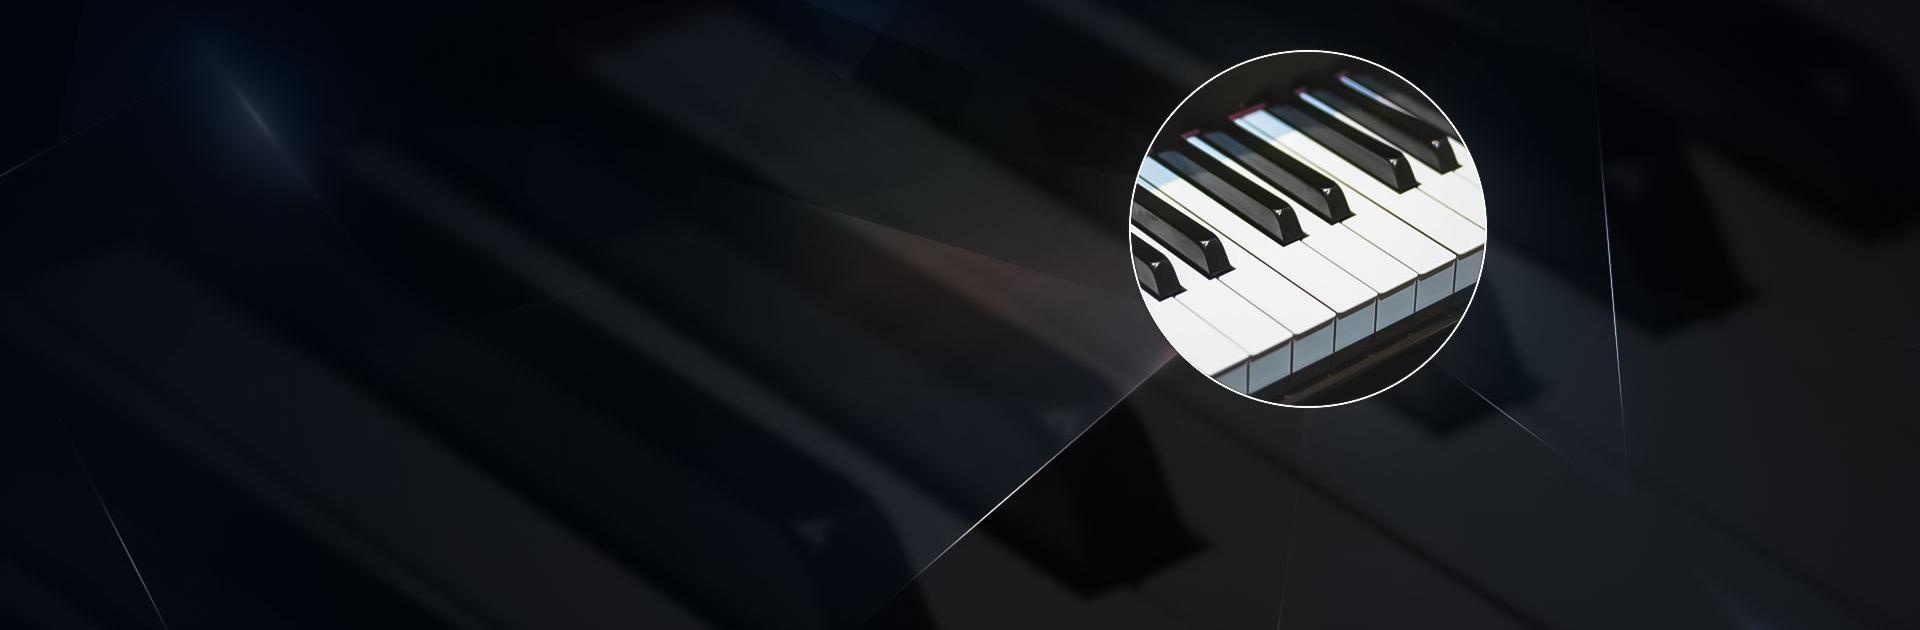 Baixar & Jogar Jogo de Piano: Música Clássica no PC & Mac (Emulador)